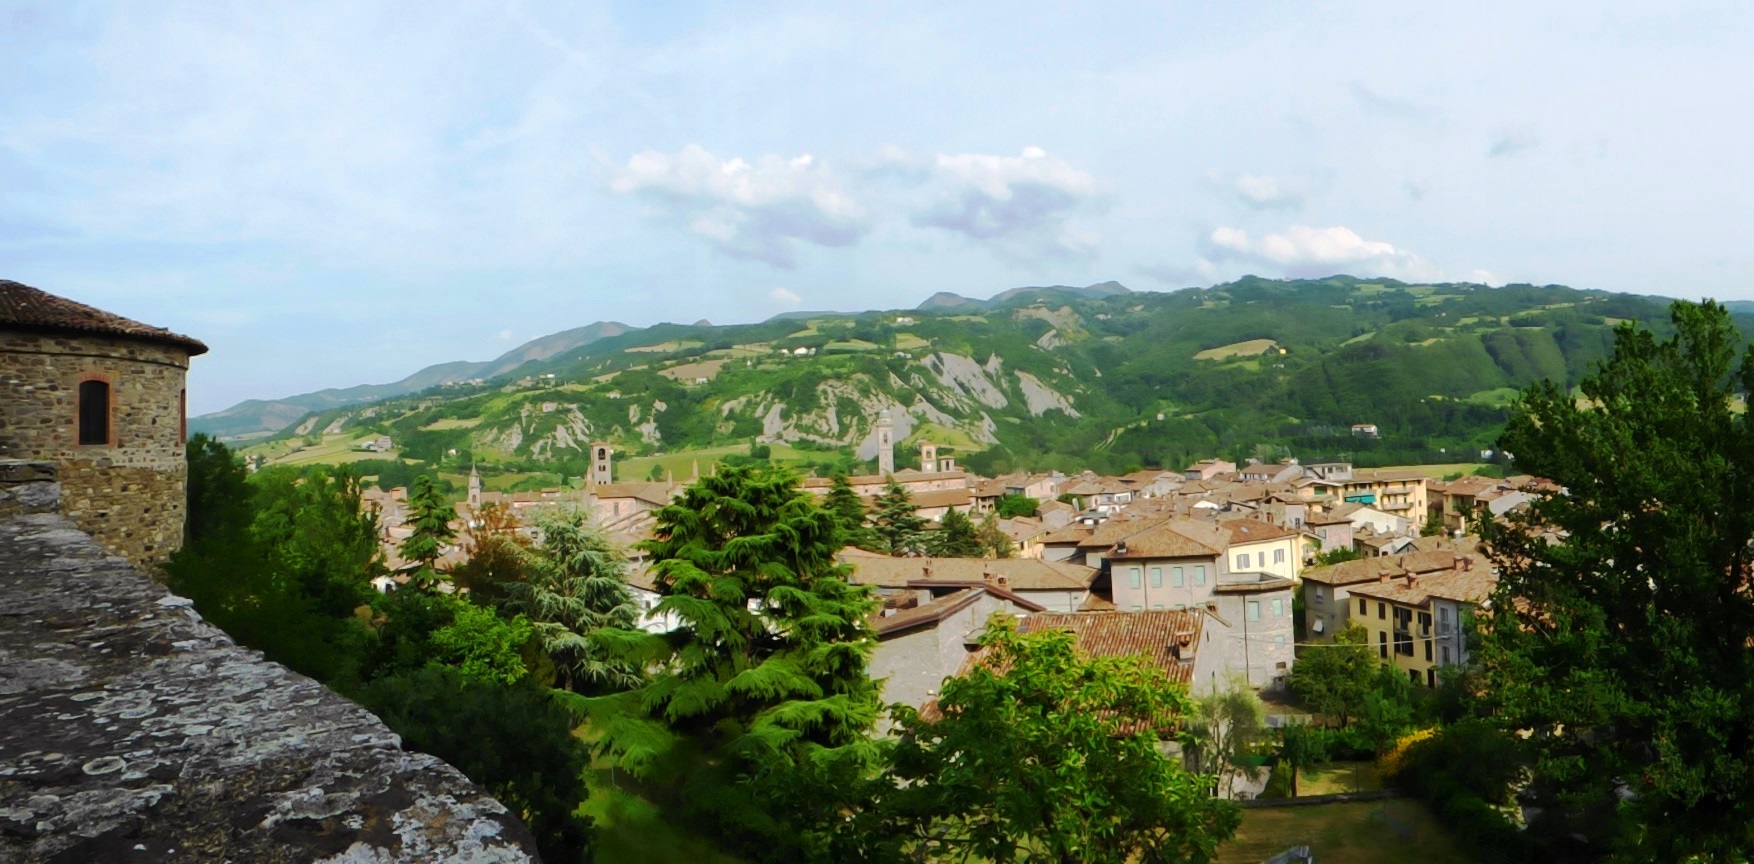 Artre : Bobbio - Il Castello in Fiore II ed. 28 -29 maggio 2016